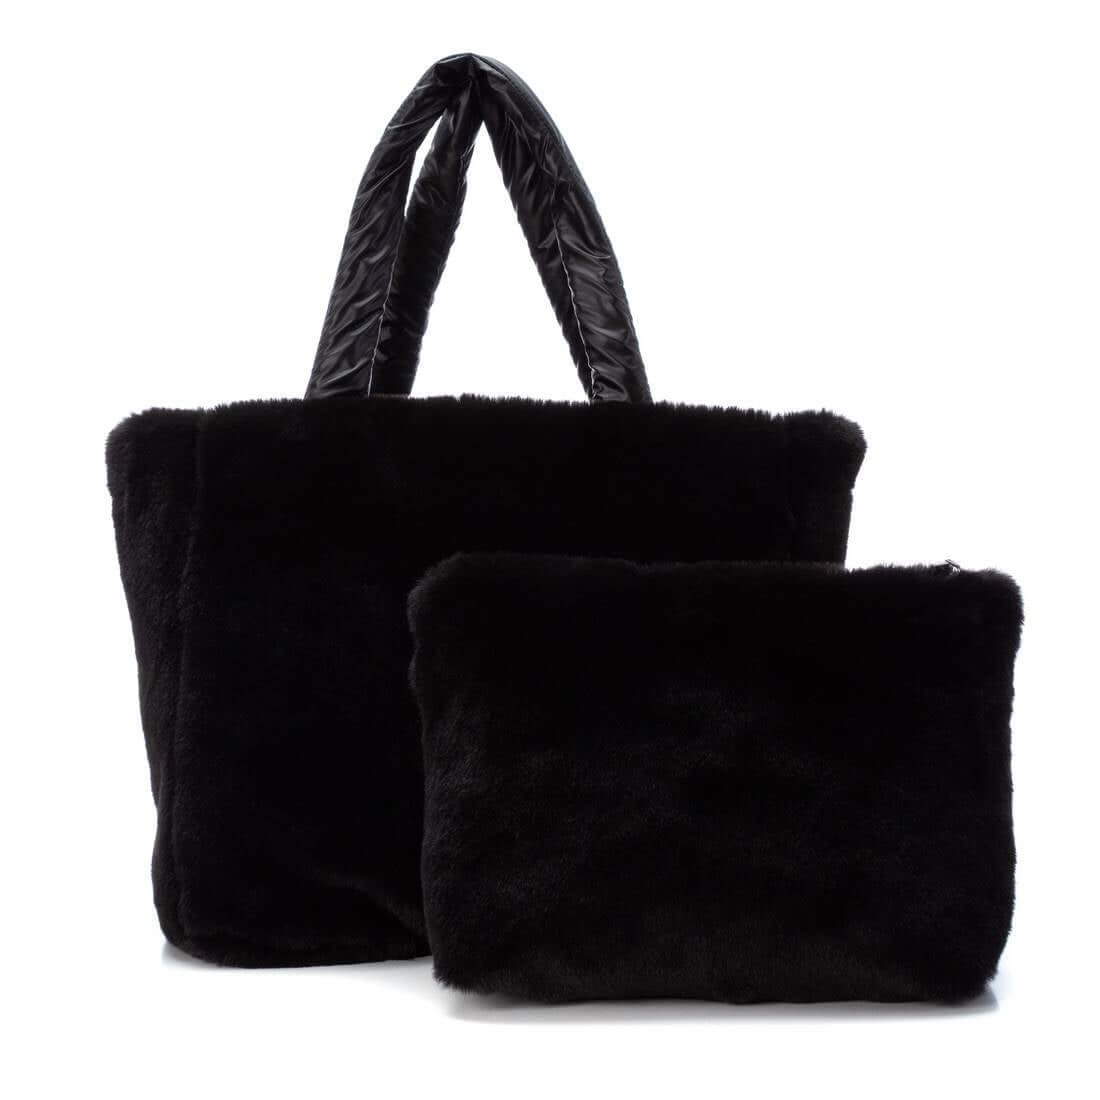 XTI Black Textile Ladies Bag (reversible & includes a separate pouch bag)